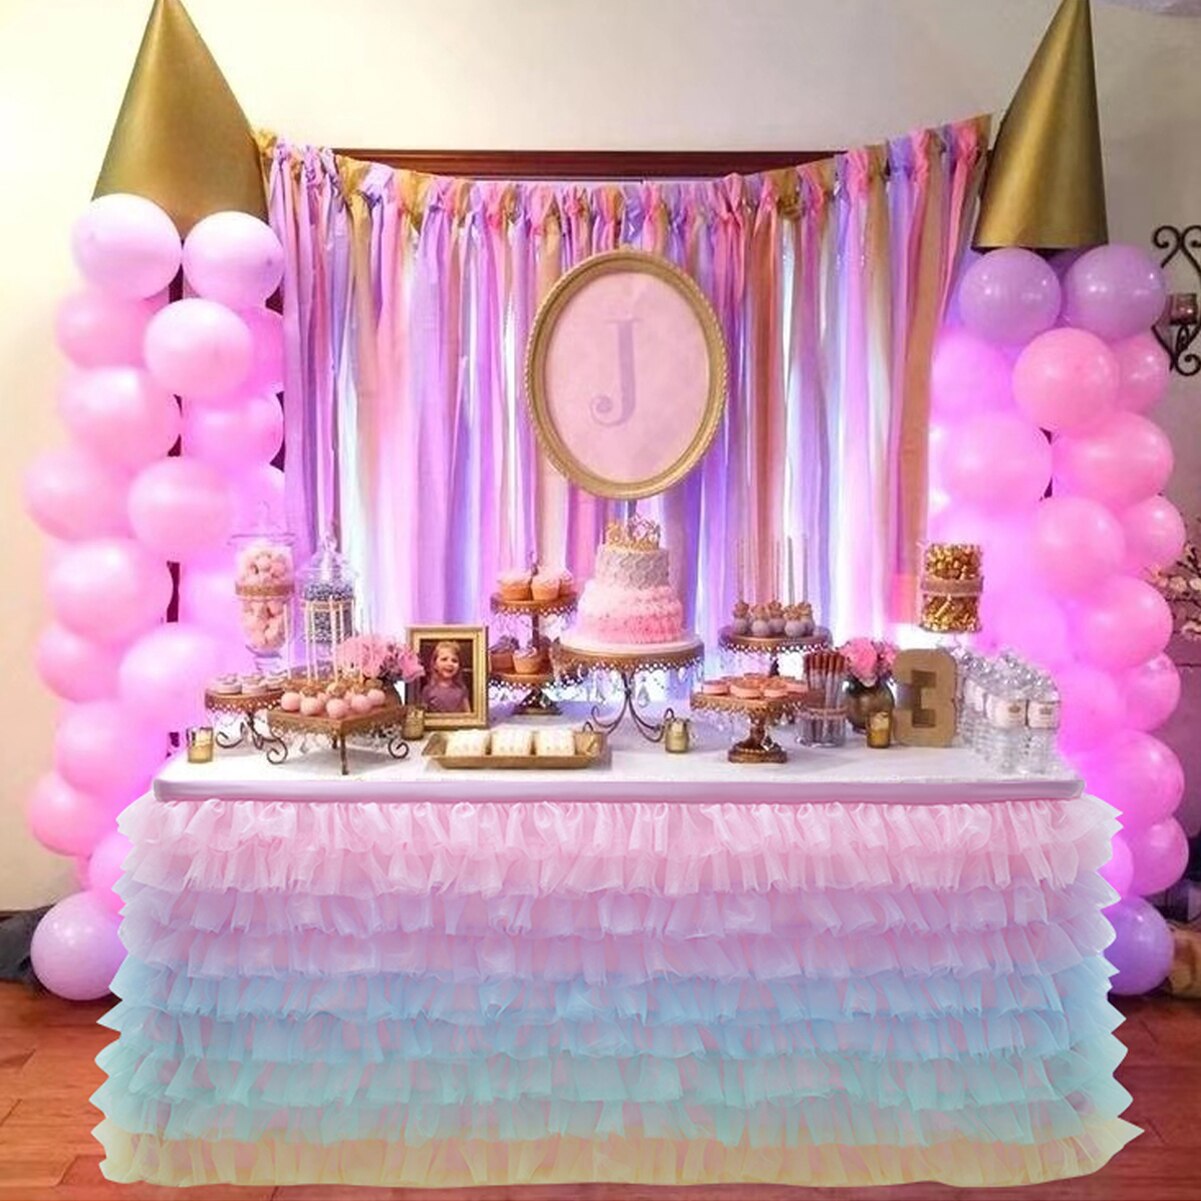 Bord nederdel tyl bord nederdel til bryllup dekoration baby shower fødselsdag fest fest bryllup bord fodpaneler 180 x 77cm: Som billede